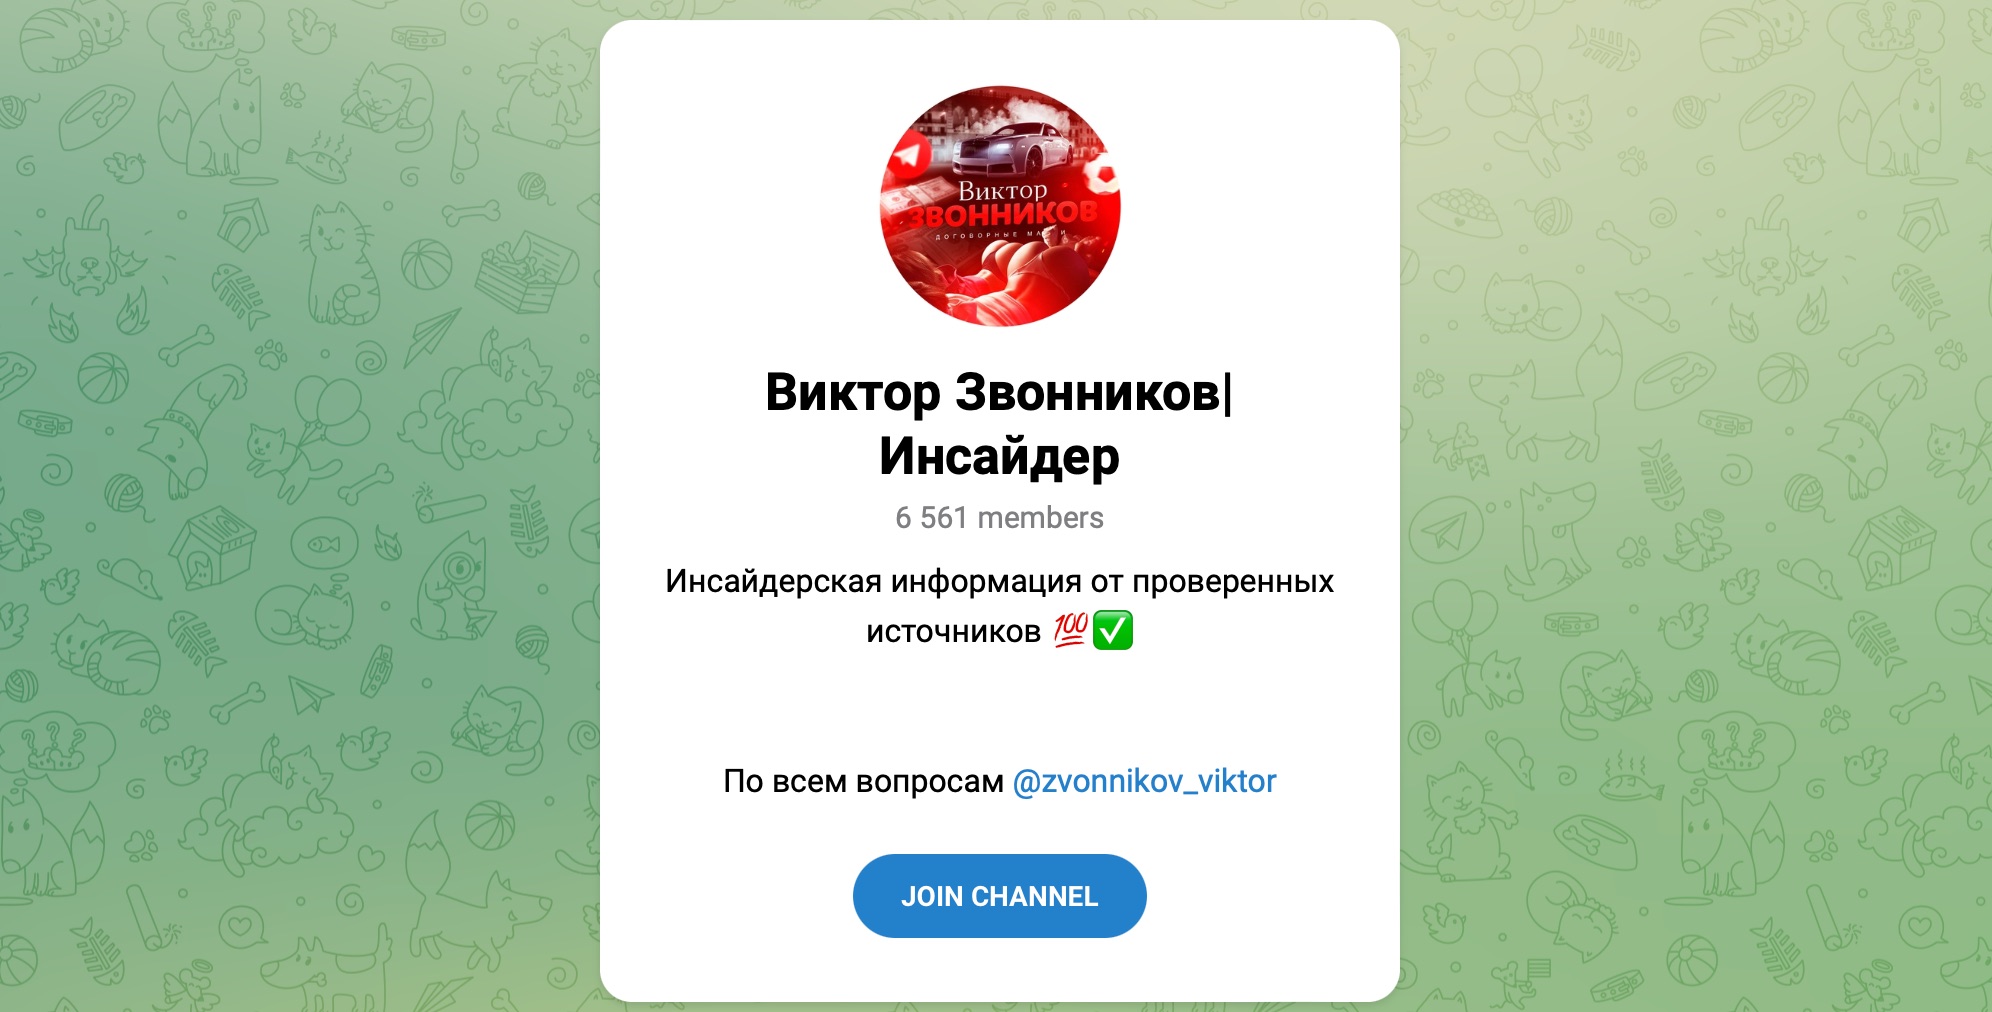 Внешний вид телеграм канала Виктор Звонников | Инсайдер